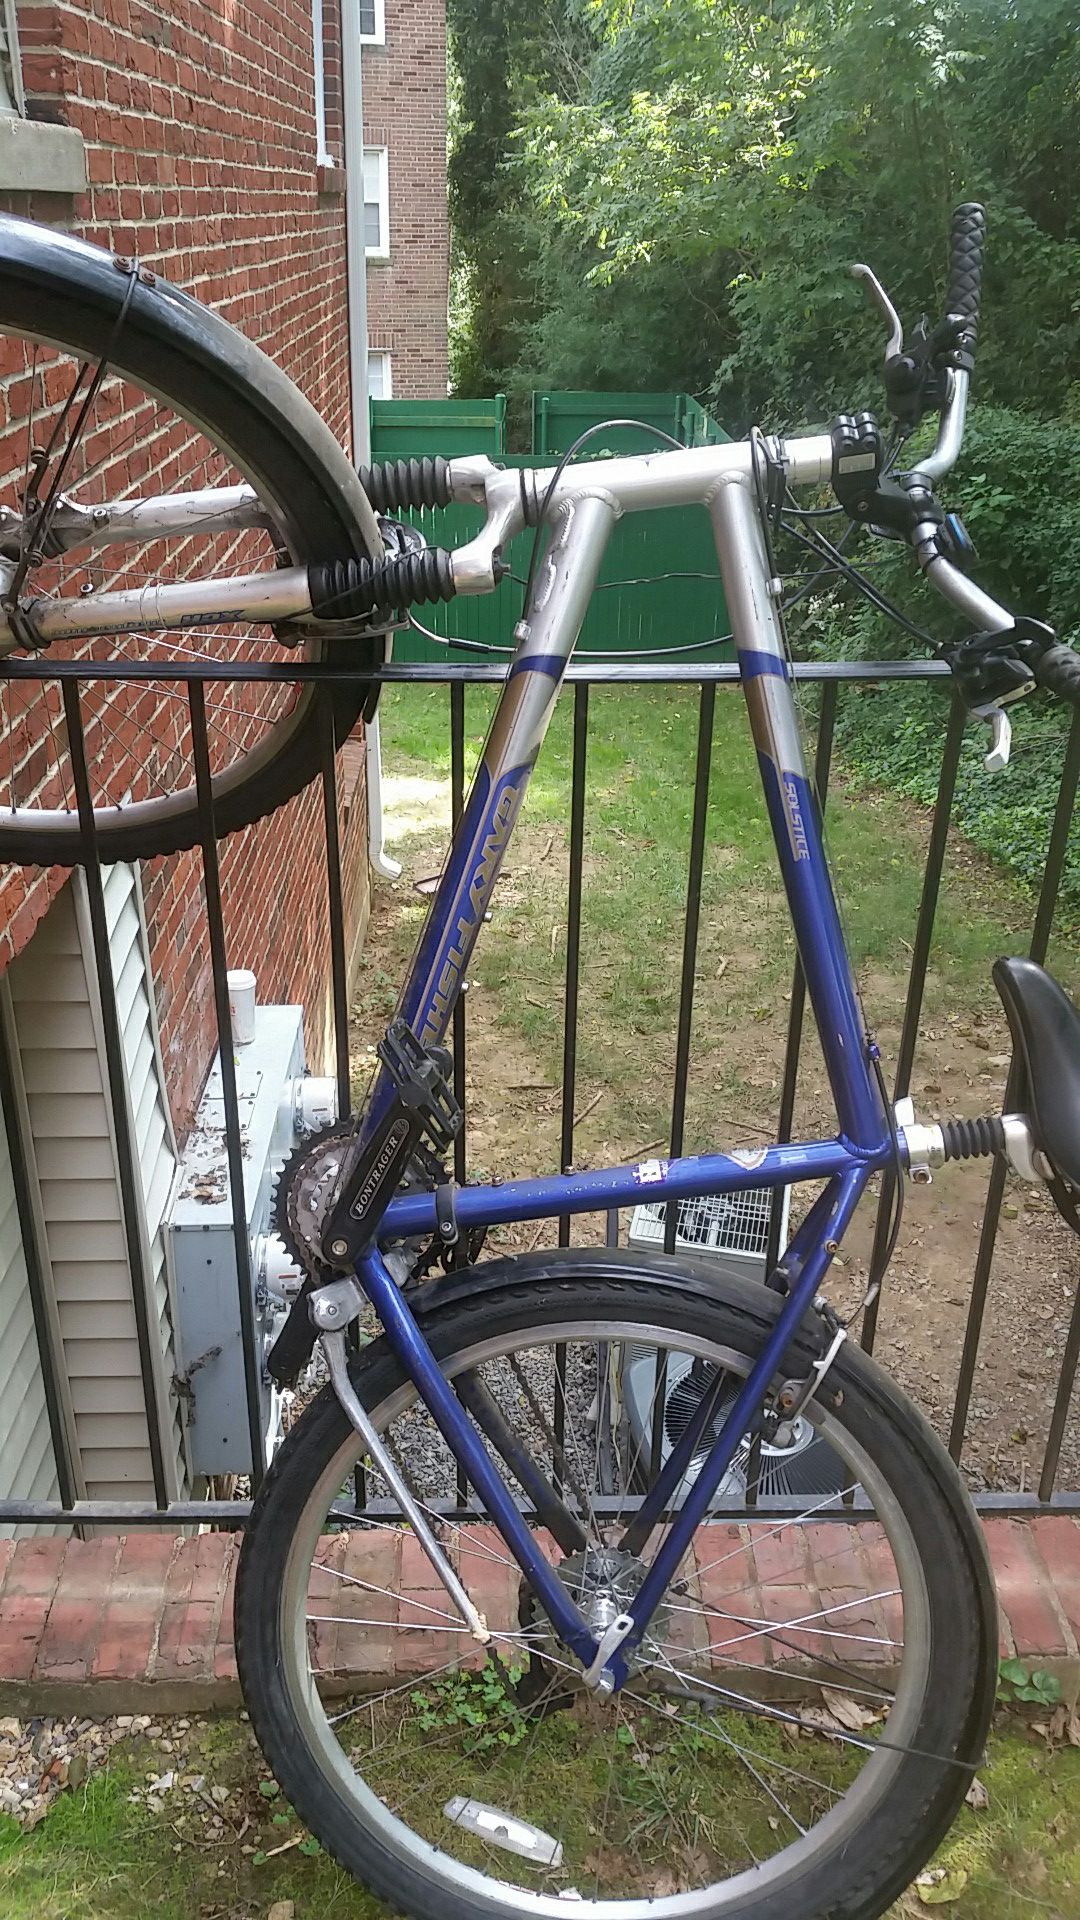 Blue and grey bike